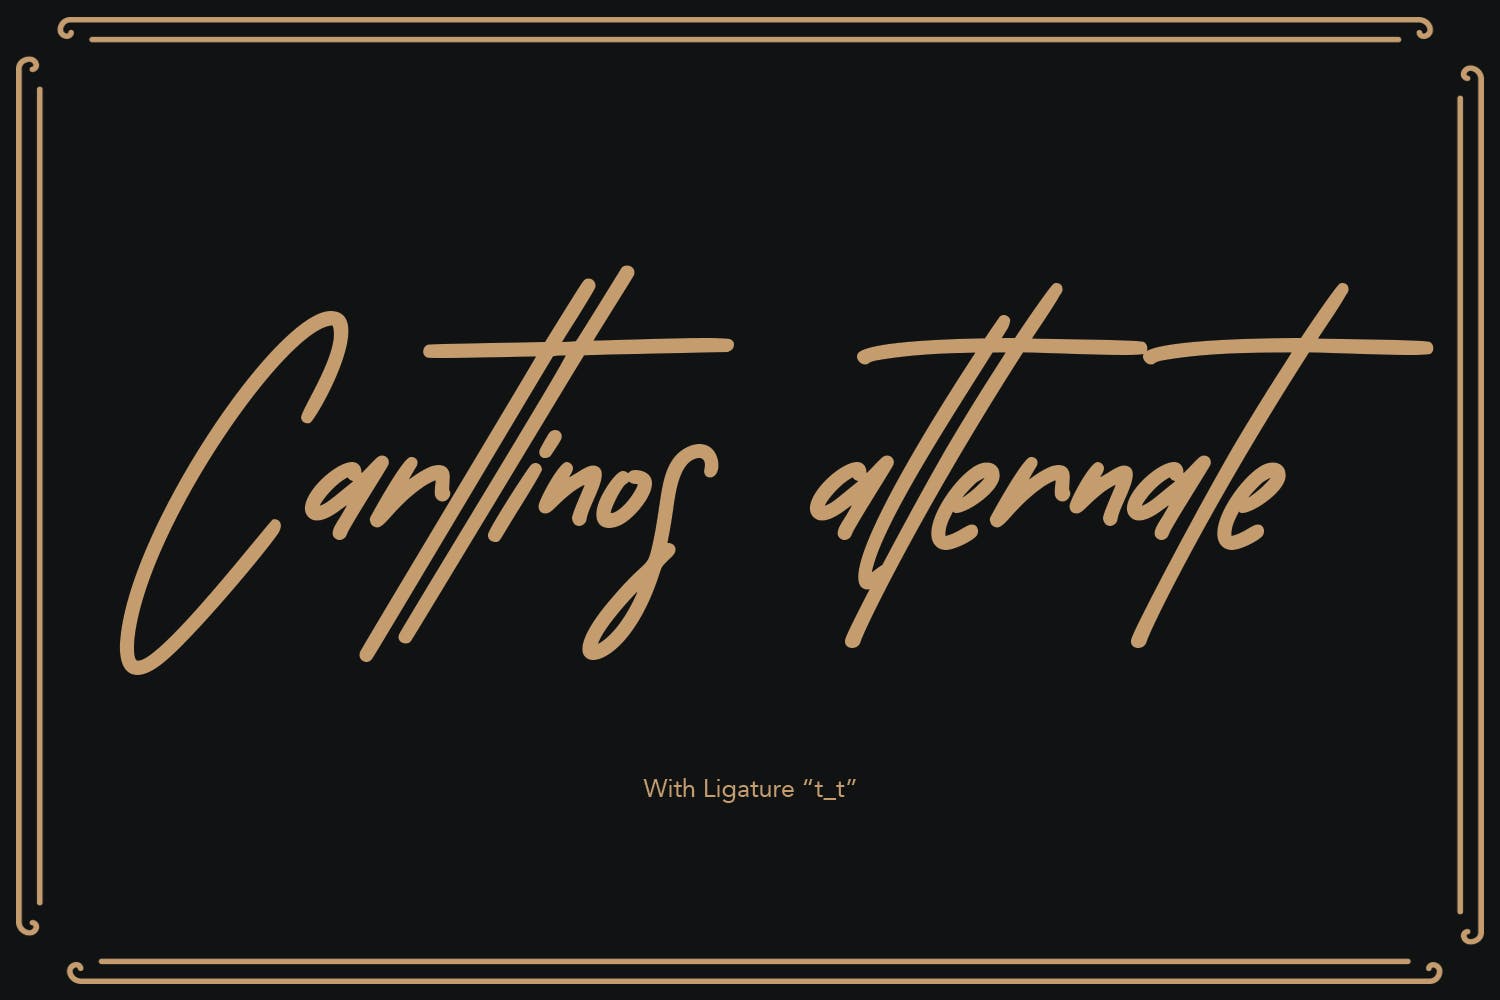 真实手写签名英文字体素材 Carttinos Signature Typeface 设计素材 第4张